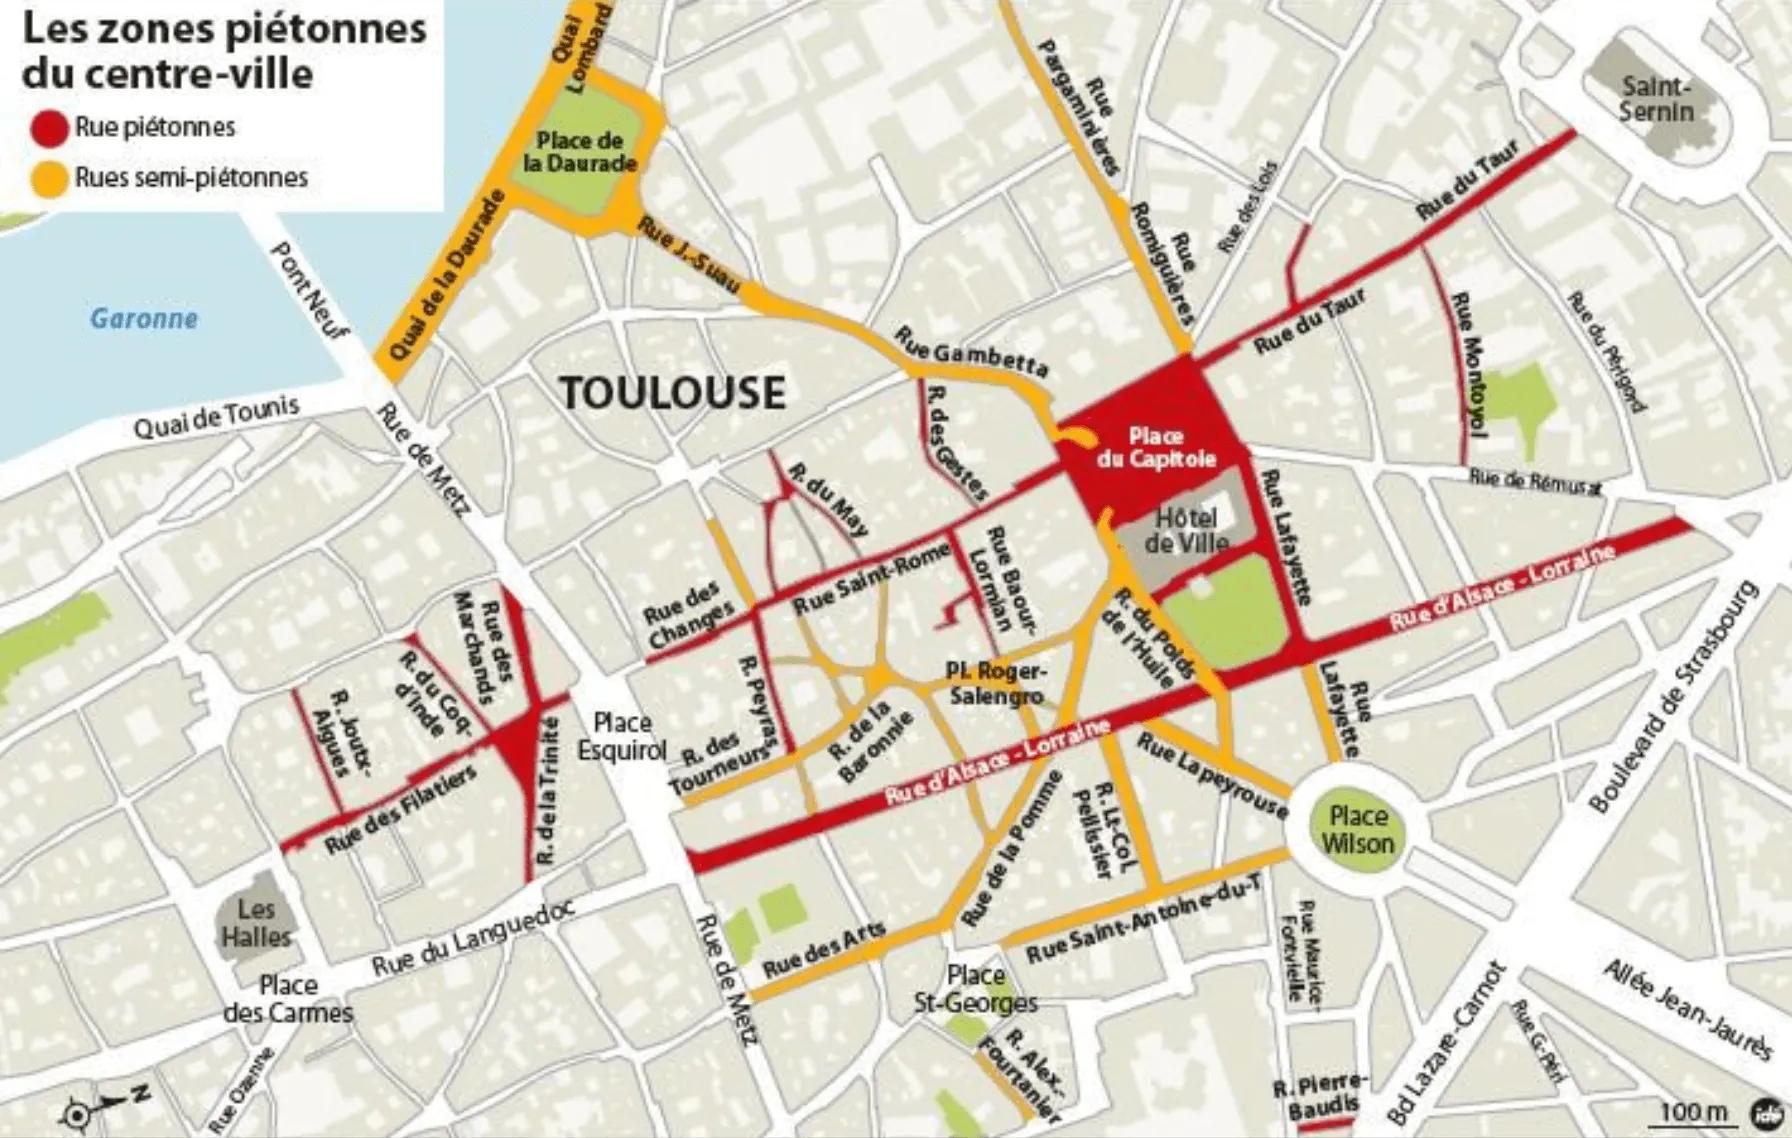 La piétonnisation du centre-ville de Toulouse